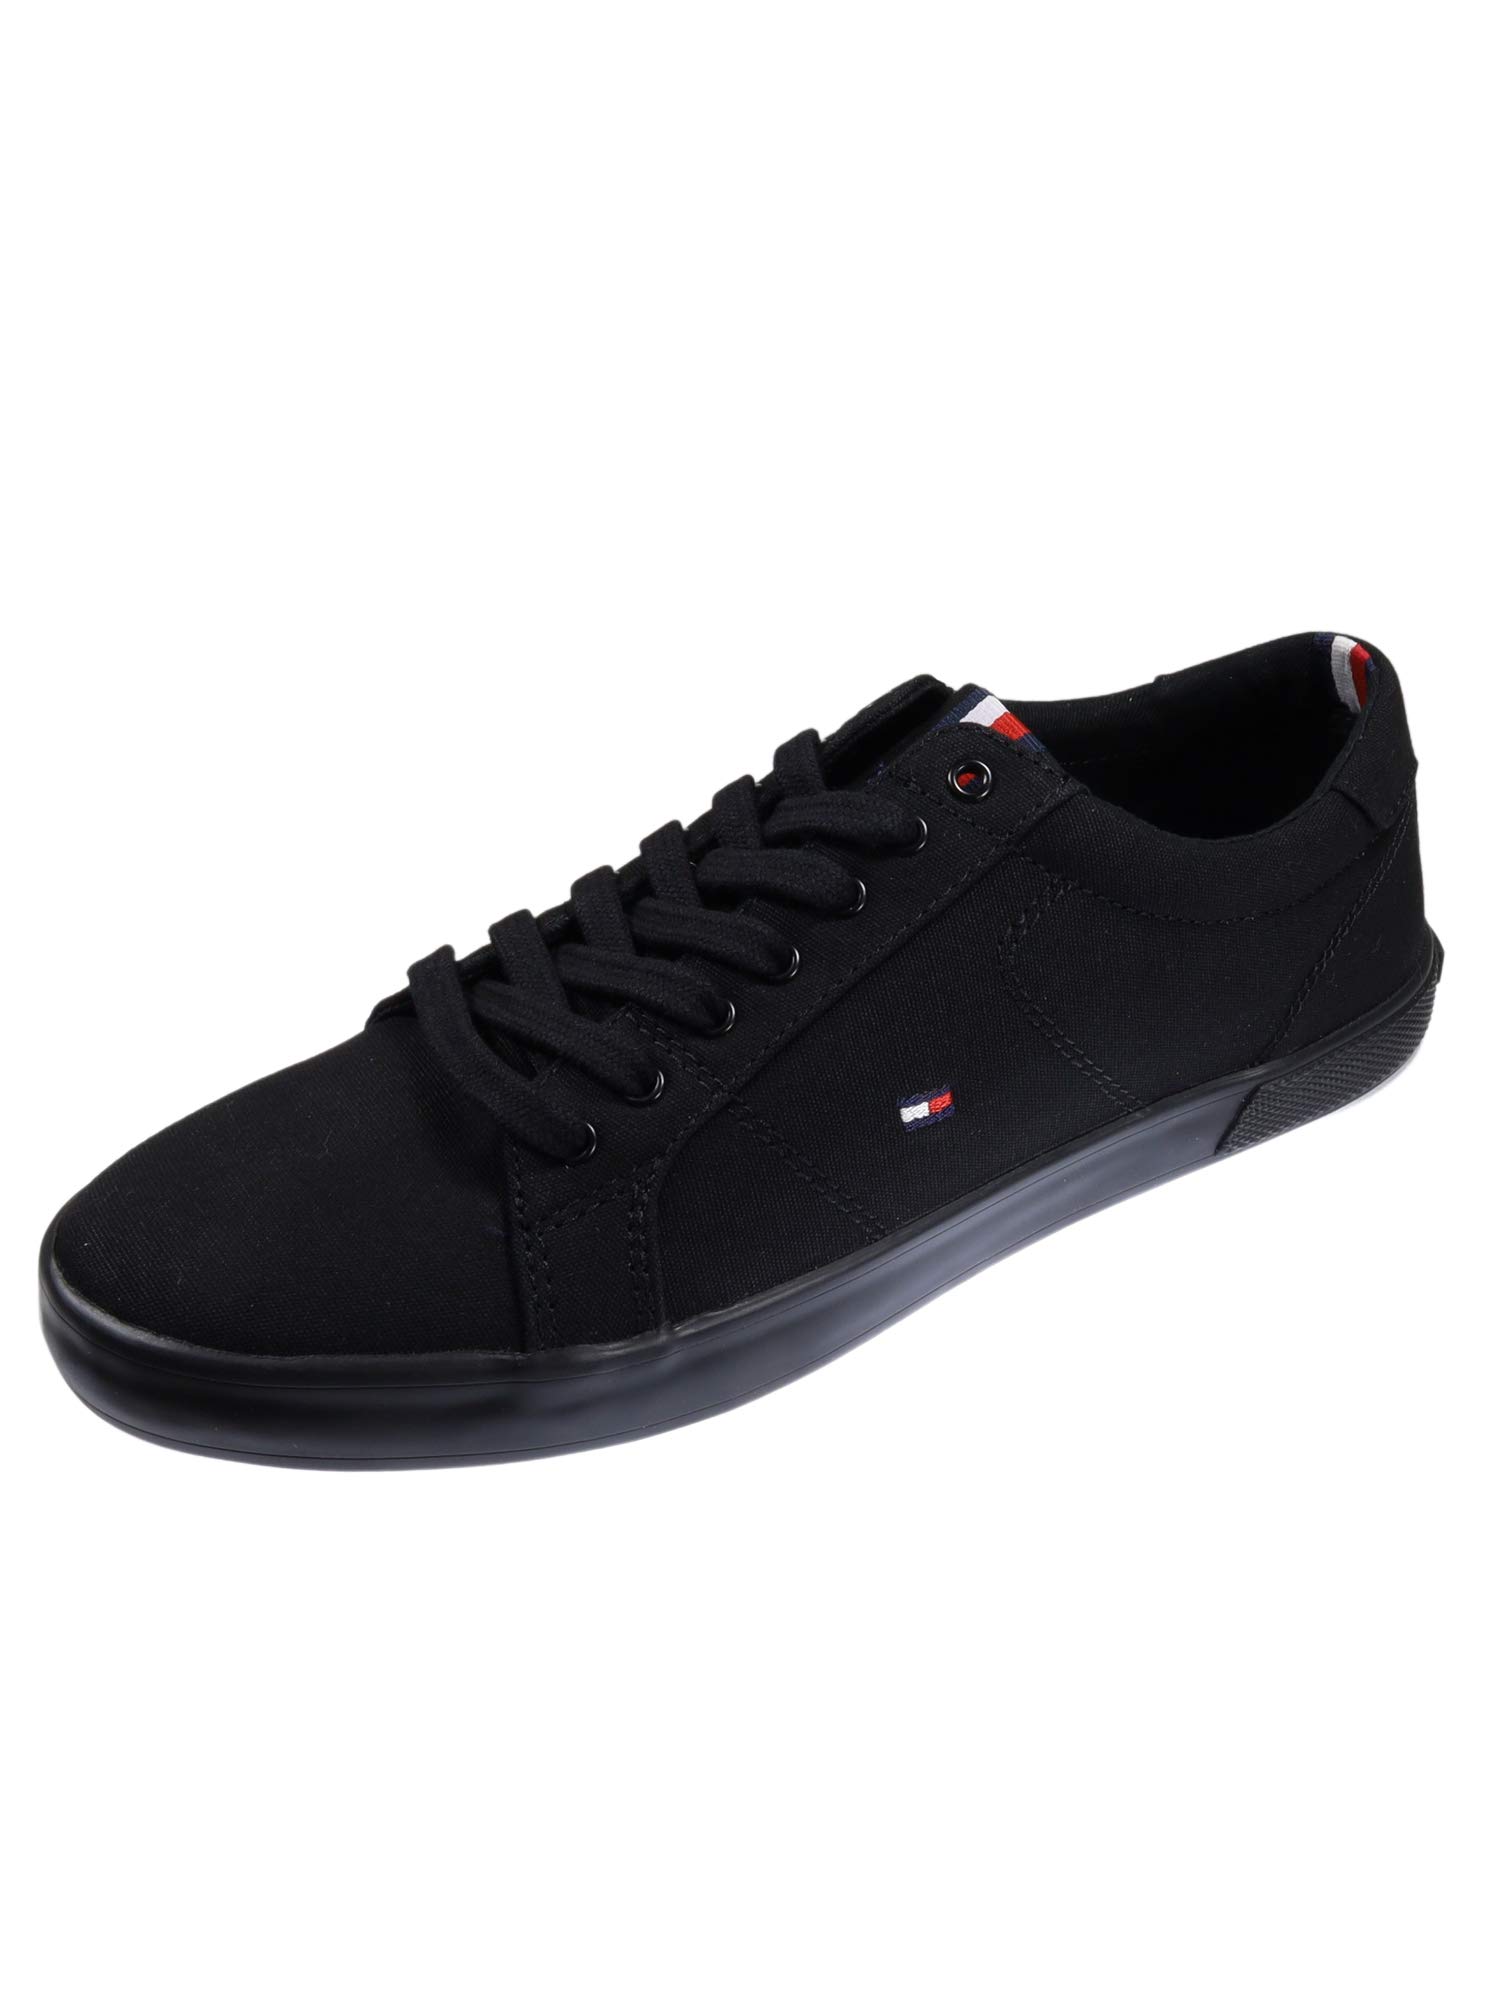 Tommy Hilfiger Herren Sneakers H2285Arlow 1D, Schwarz (Black), 39